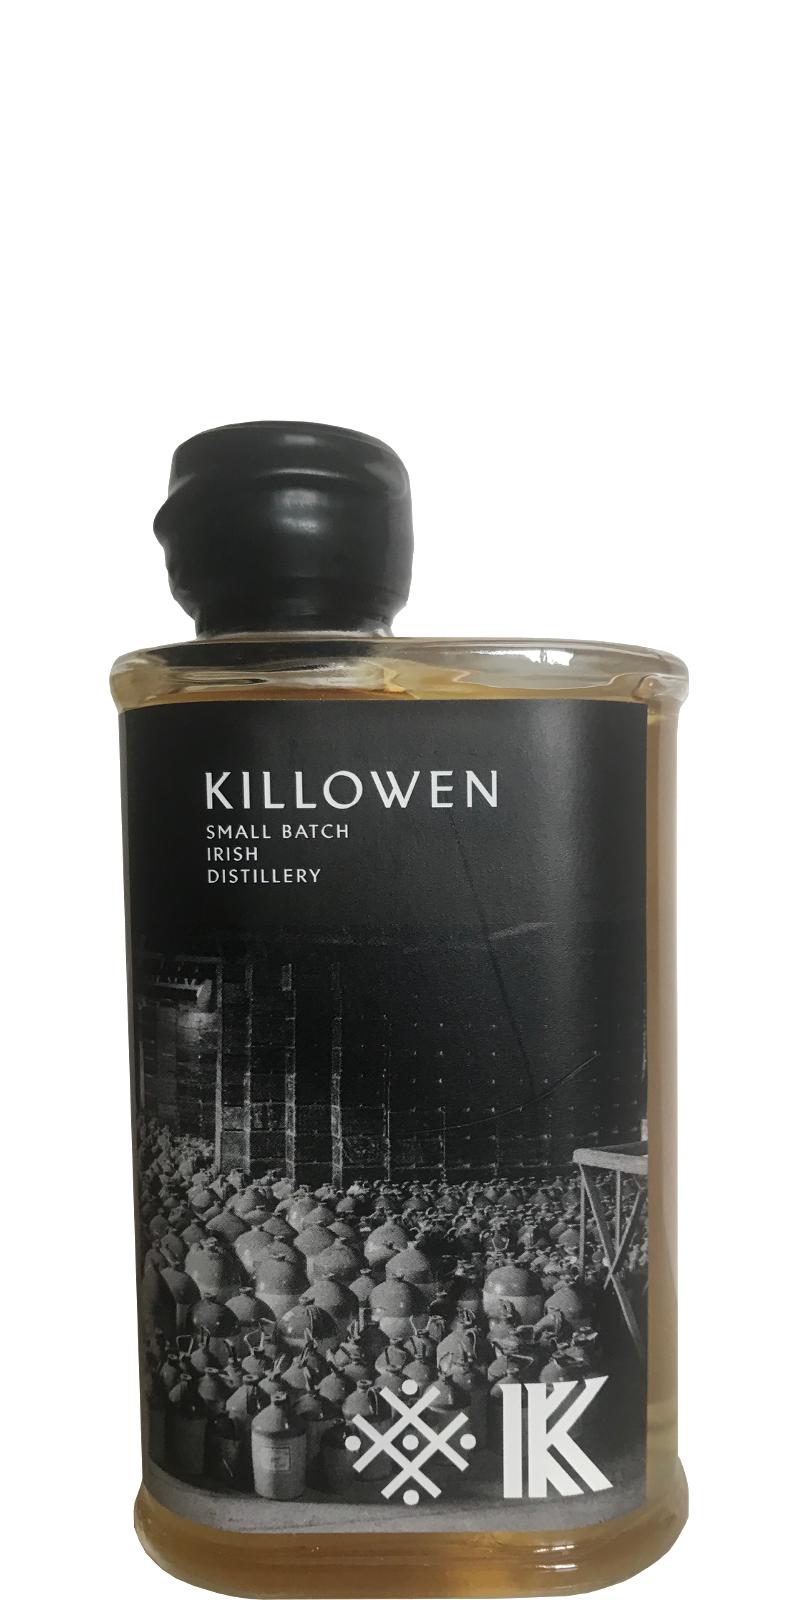 Killowen Le Cheile Cuige spirit drink ex-Bourbon firkin 55.46% 250ml